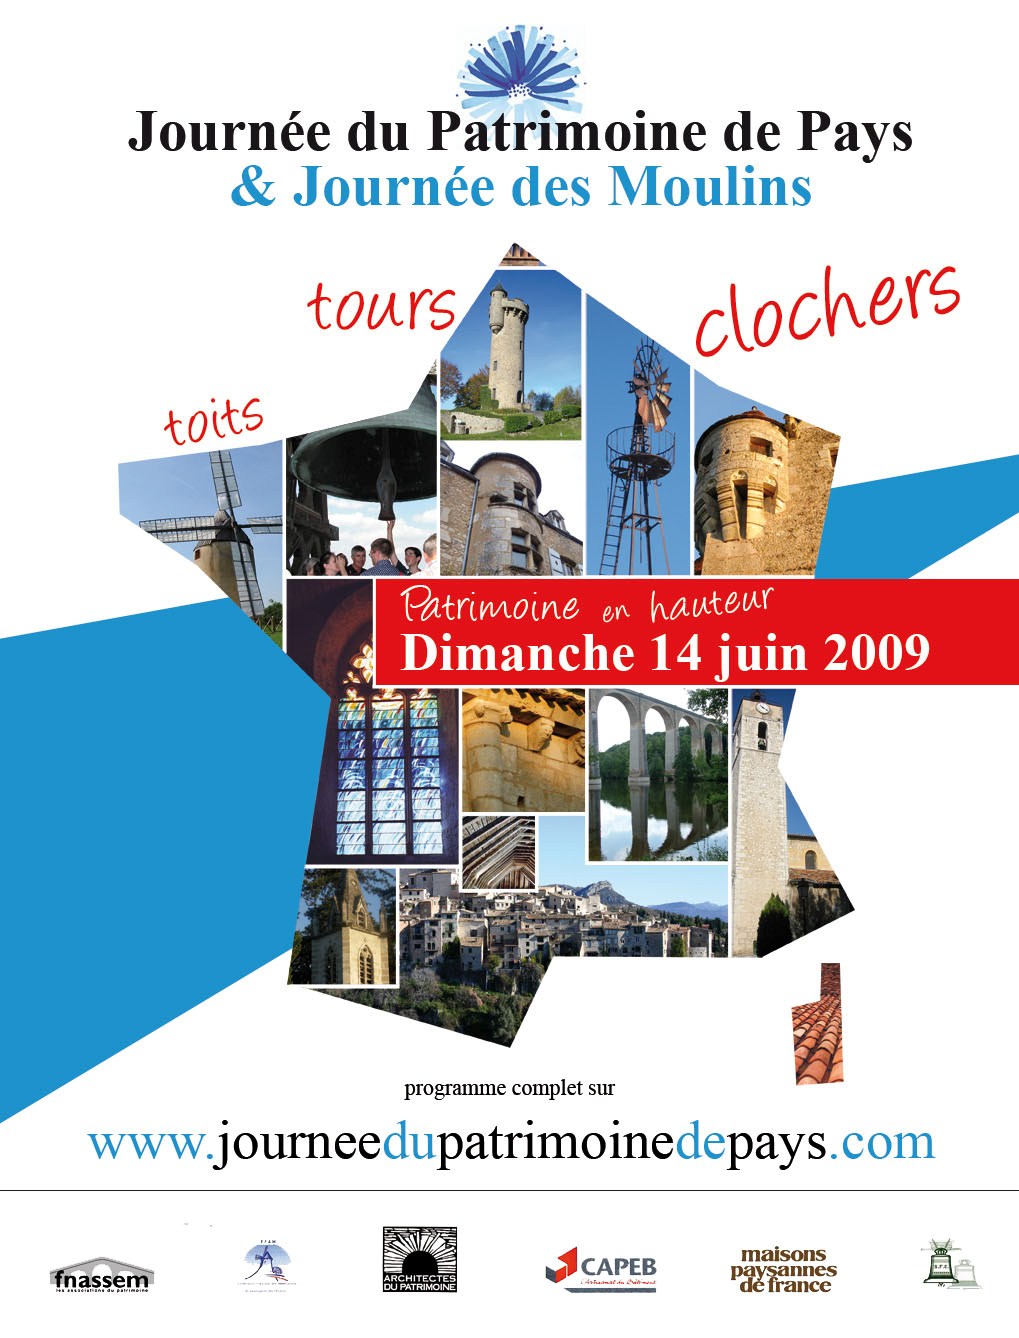 Affiche Journée du Patrimoine de Pays & Journée des Moulins 2009, Patrimoine en hauteur - Les Chemins du Patrimoine -
Saint-Julien-le-Montagnier